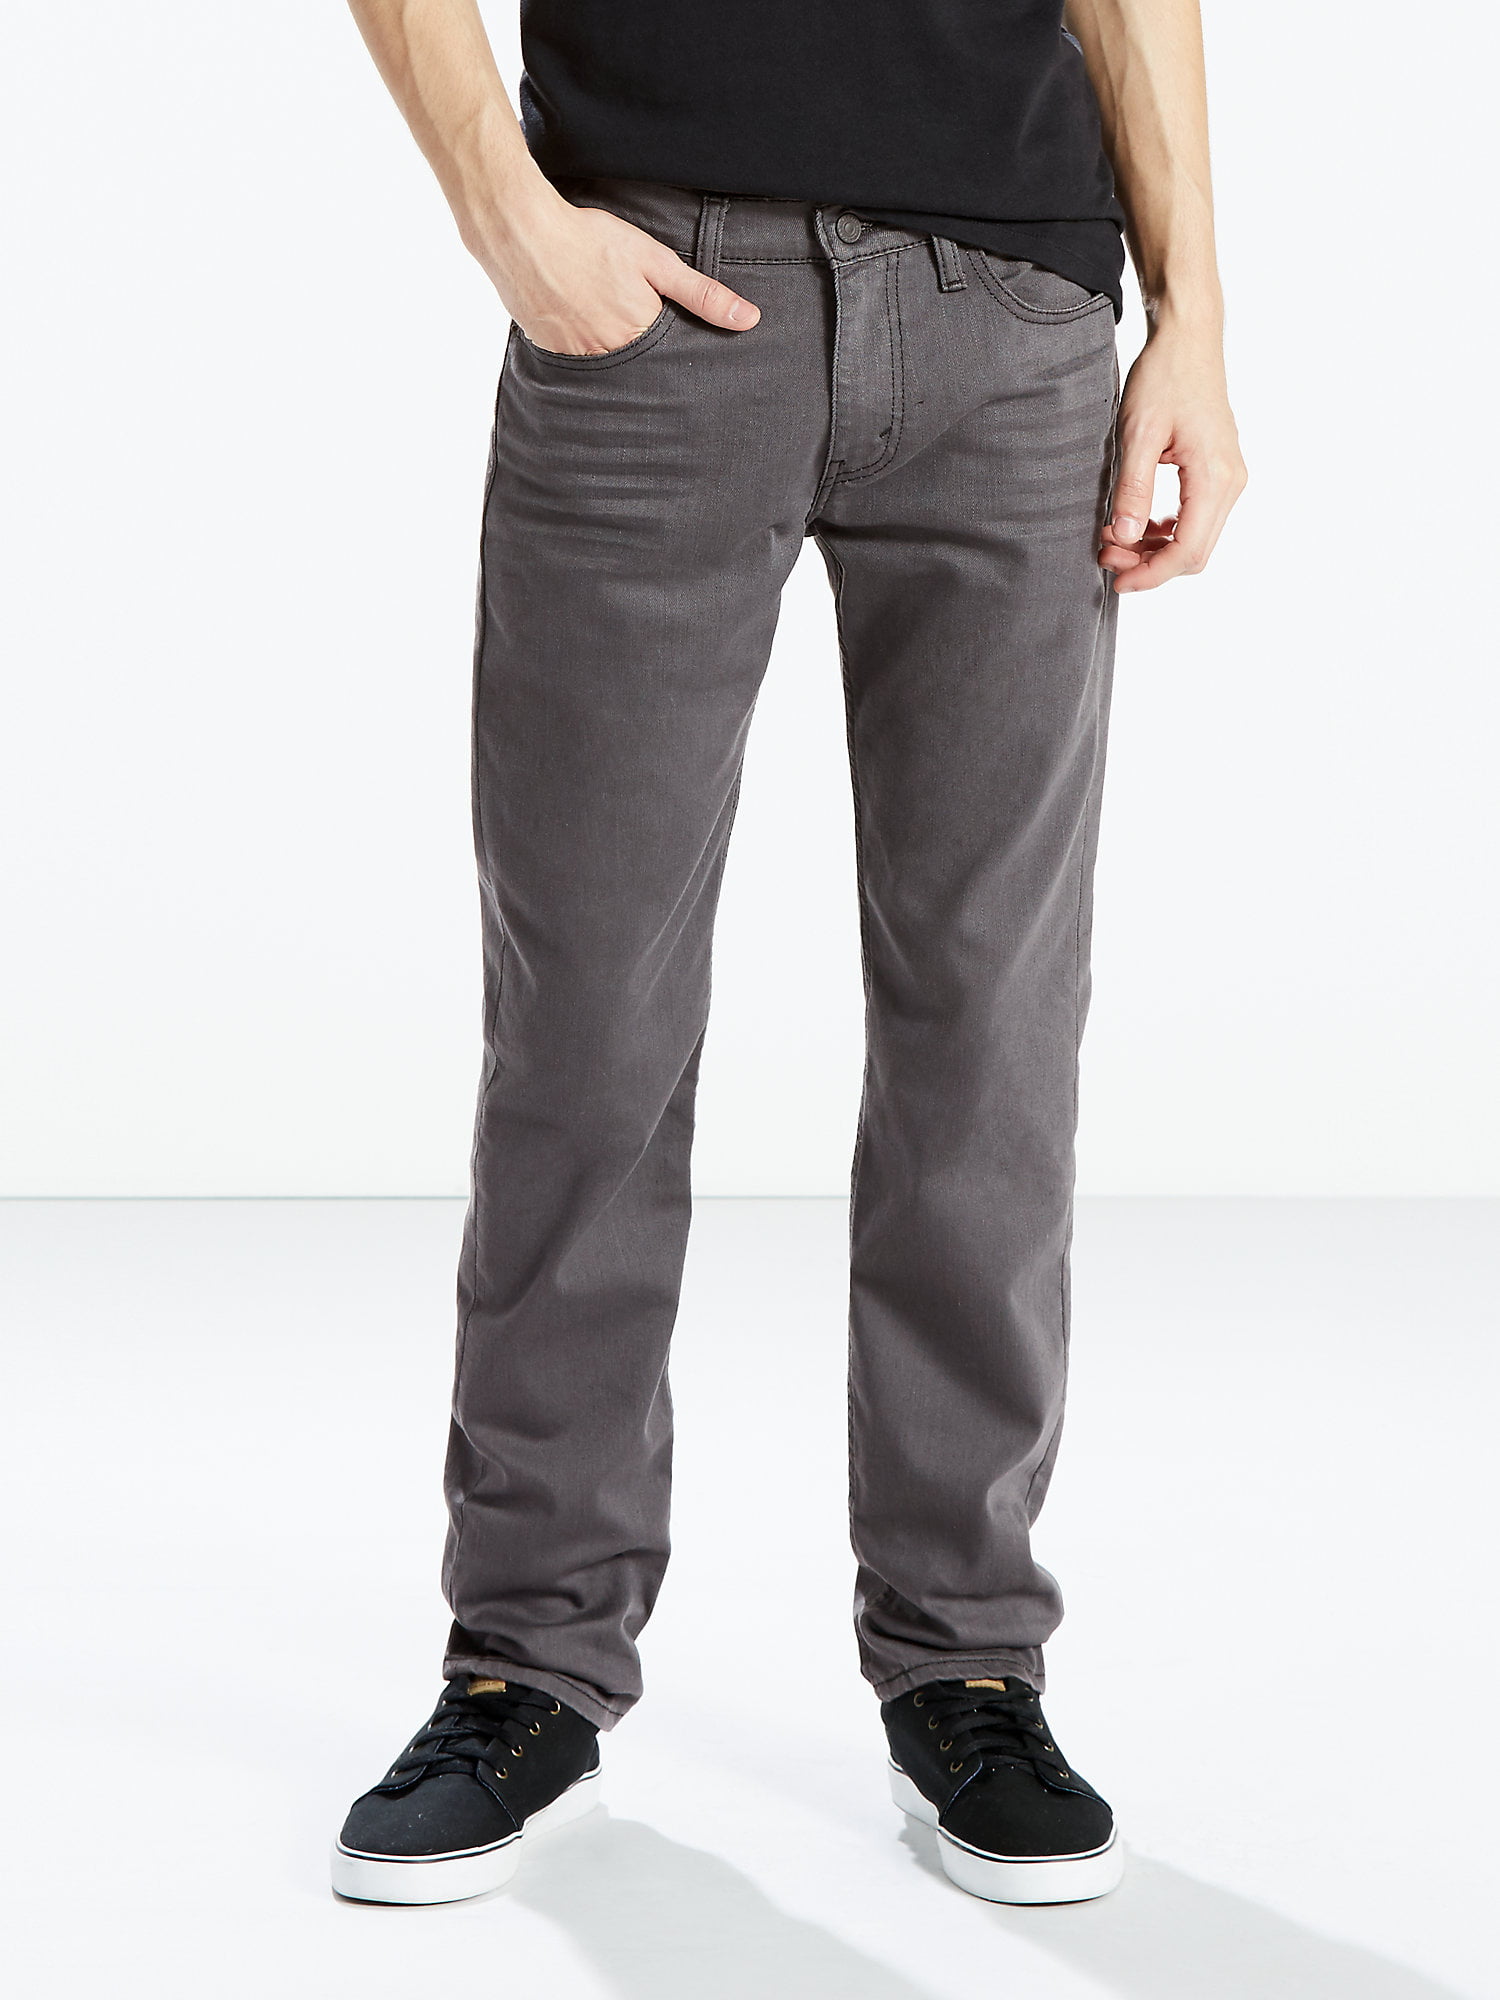 Wetenschap Meetbaar assistent Levi's Men's 511 Slim Fit Jeans - Walmart.com